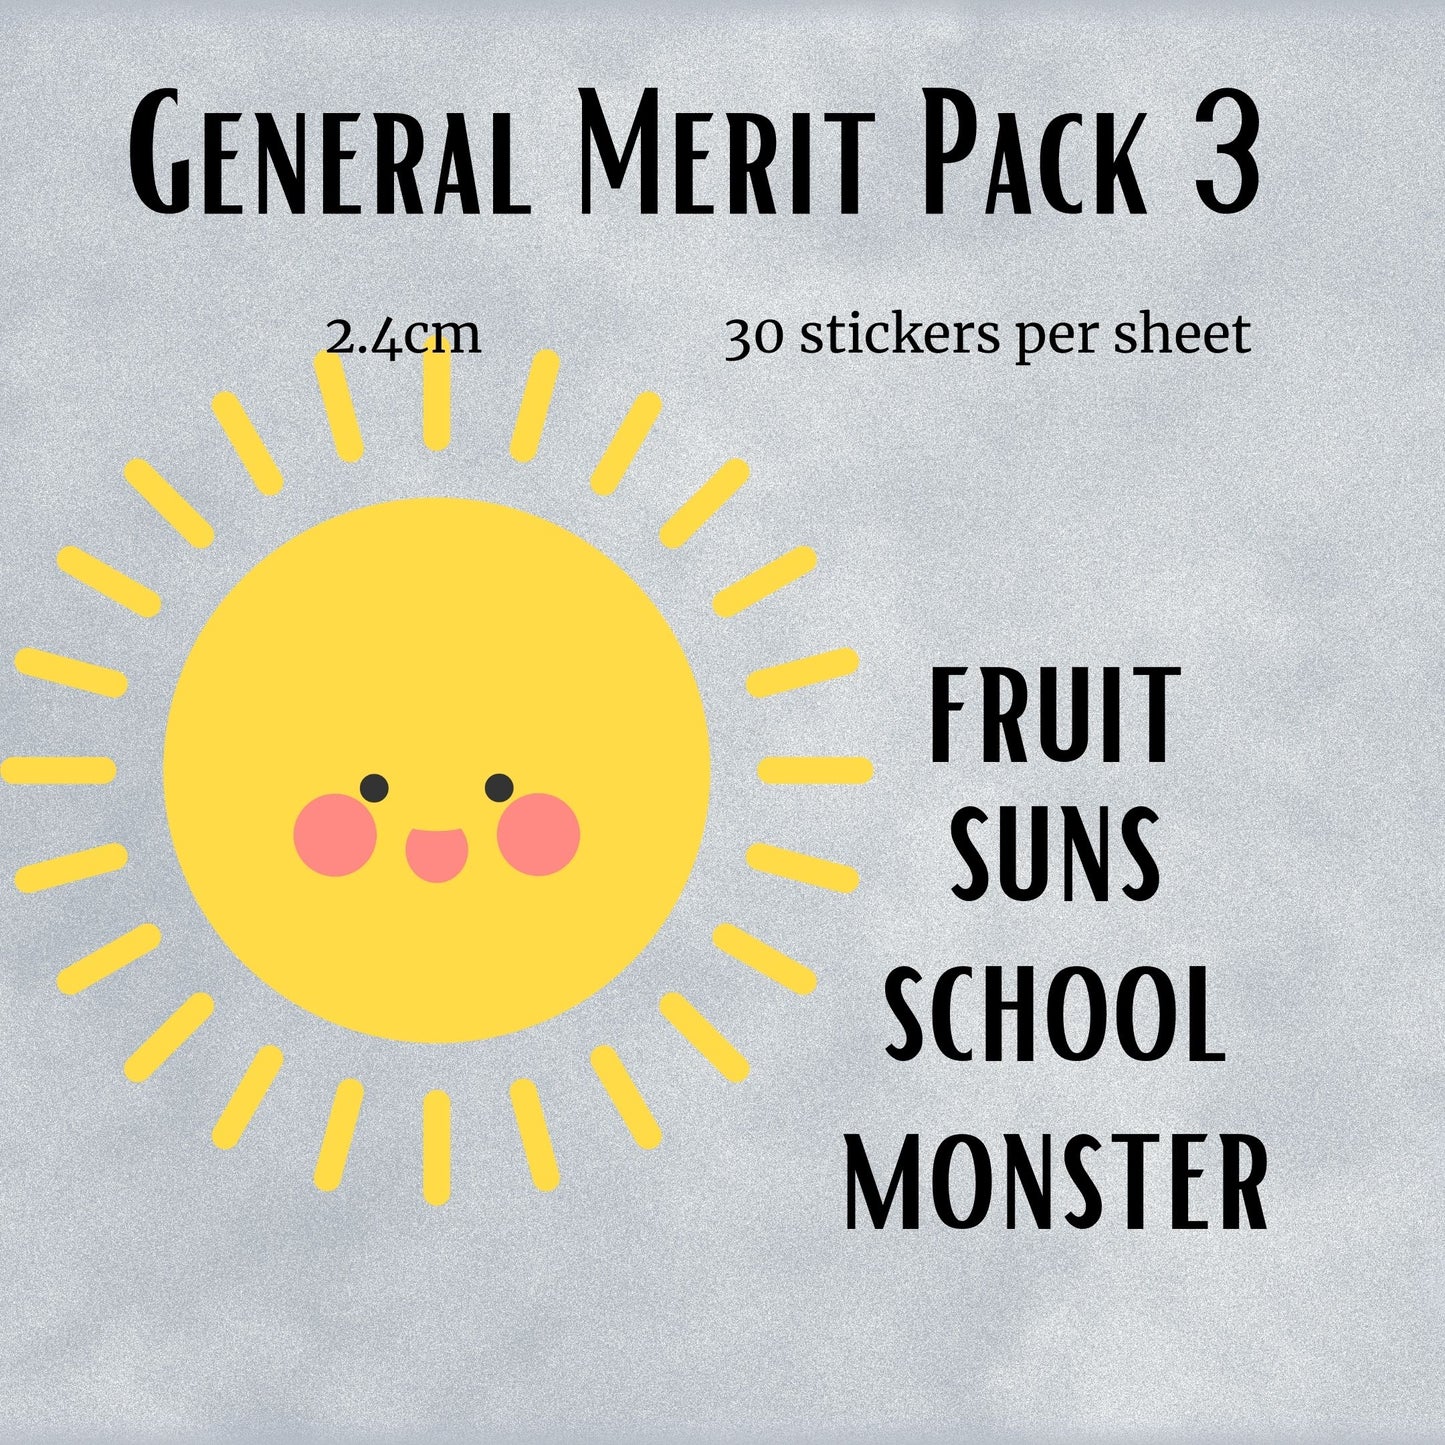 General Merit Pack 3